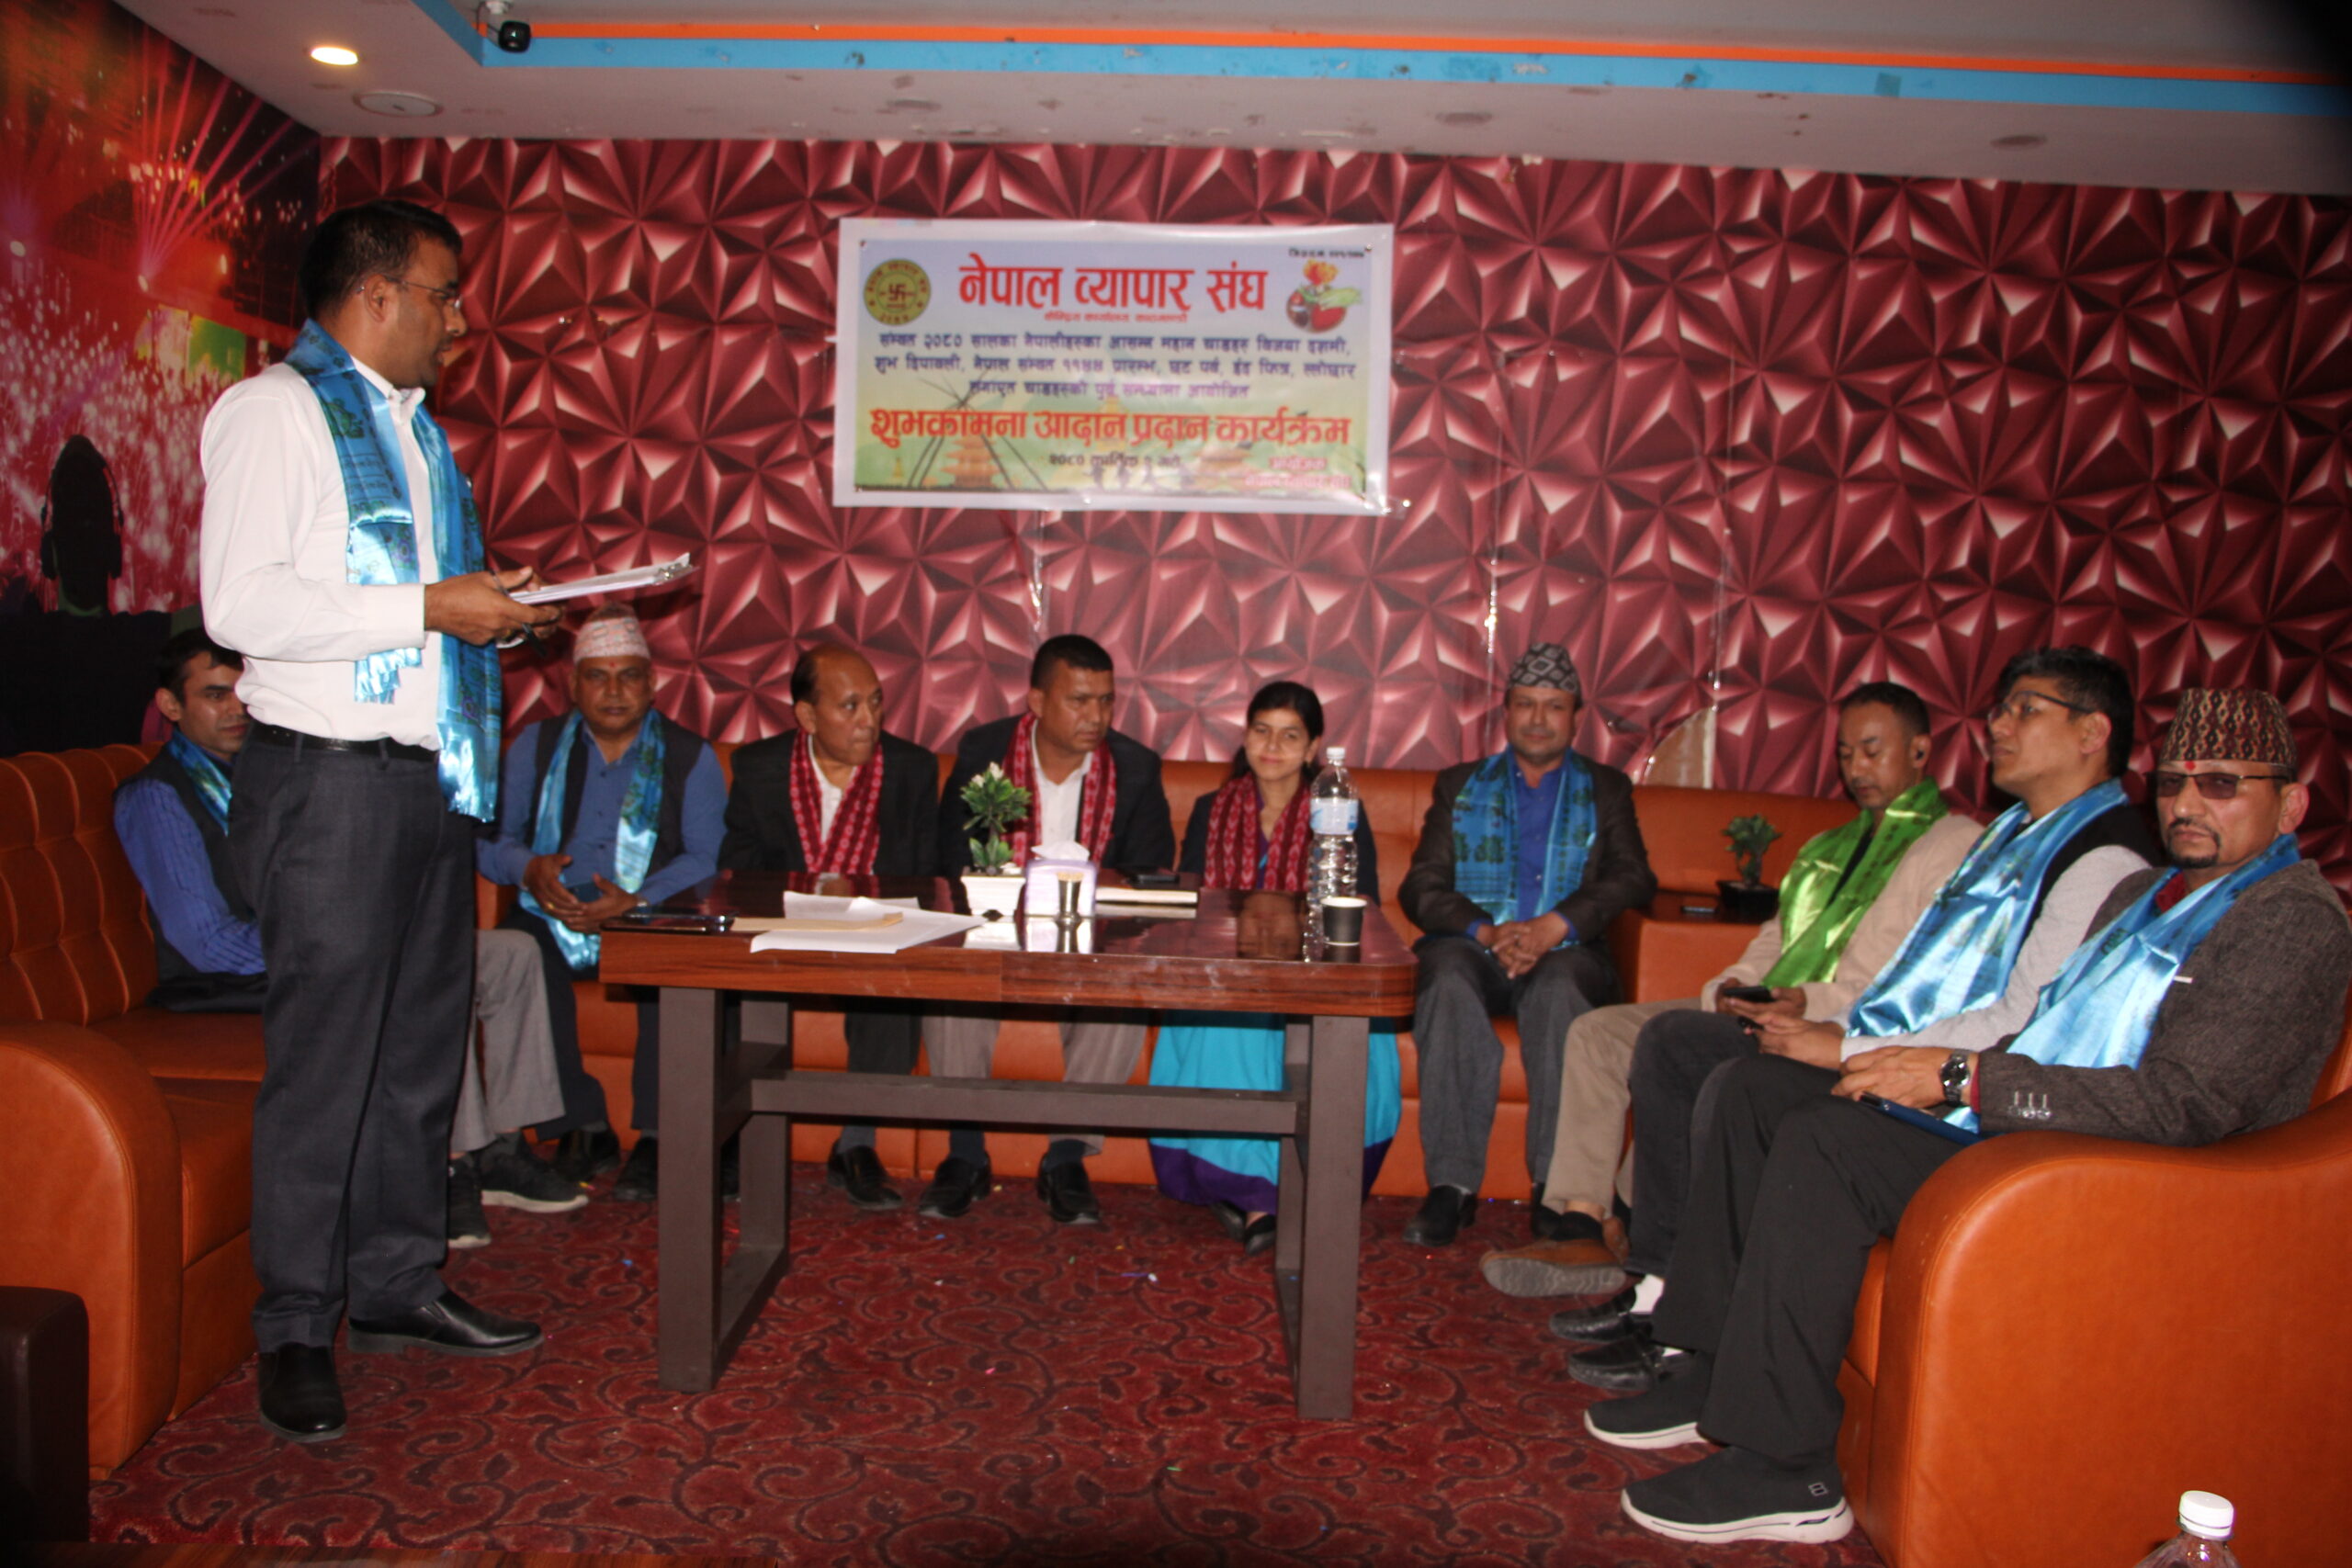 नेपाल व्यापार संघको आयोजनामा शुभकामना आदानप्रदान कार्यक्रम सम्पन्न